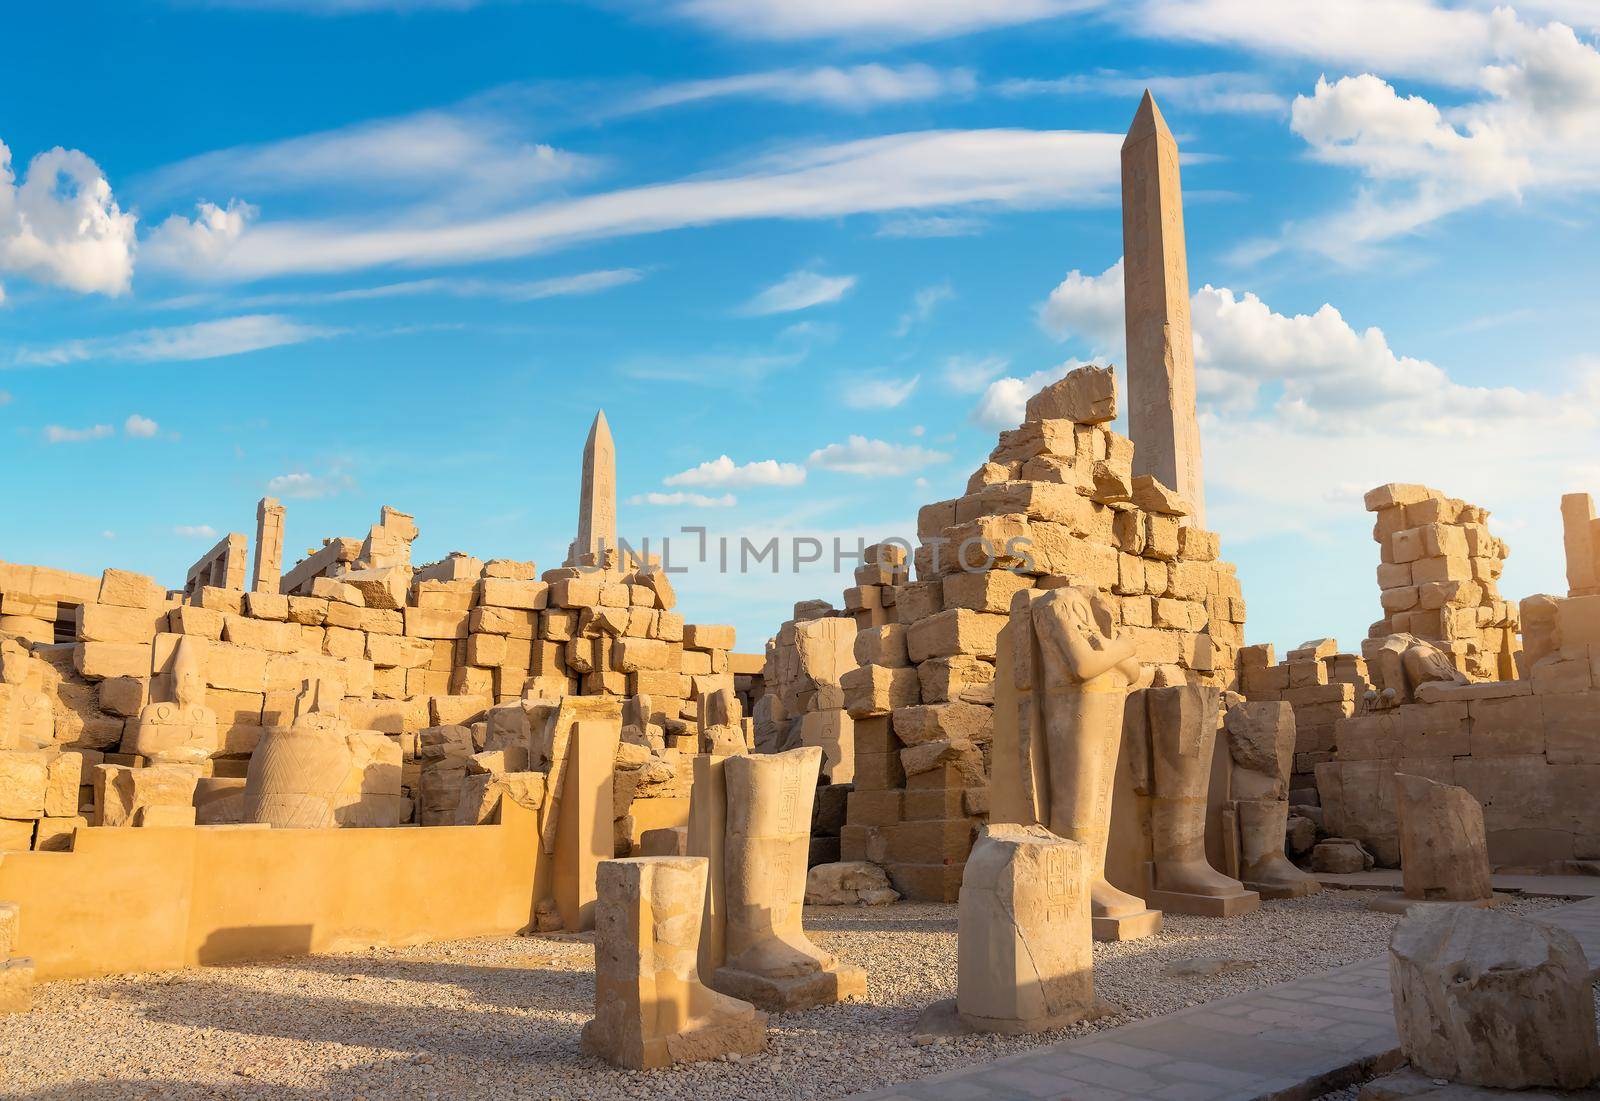 Ruins and obelisks by Givaga